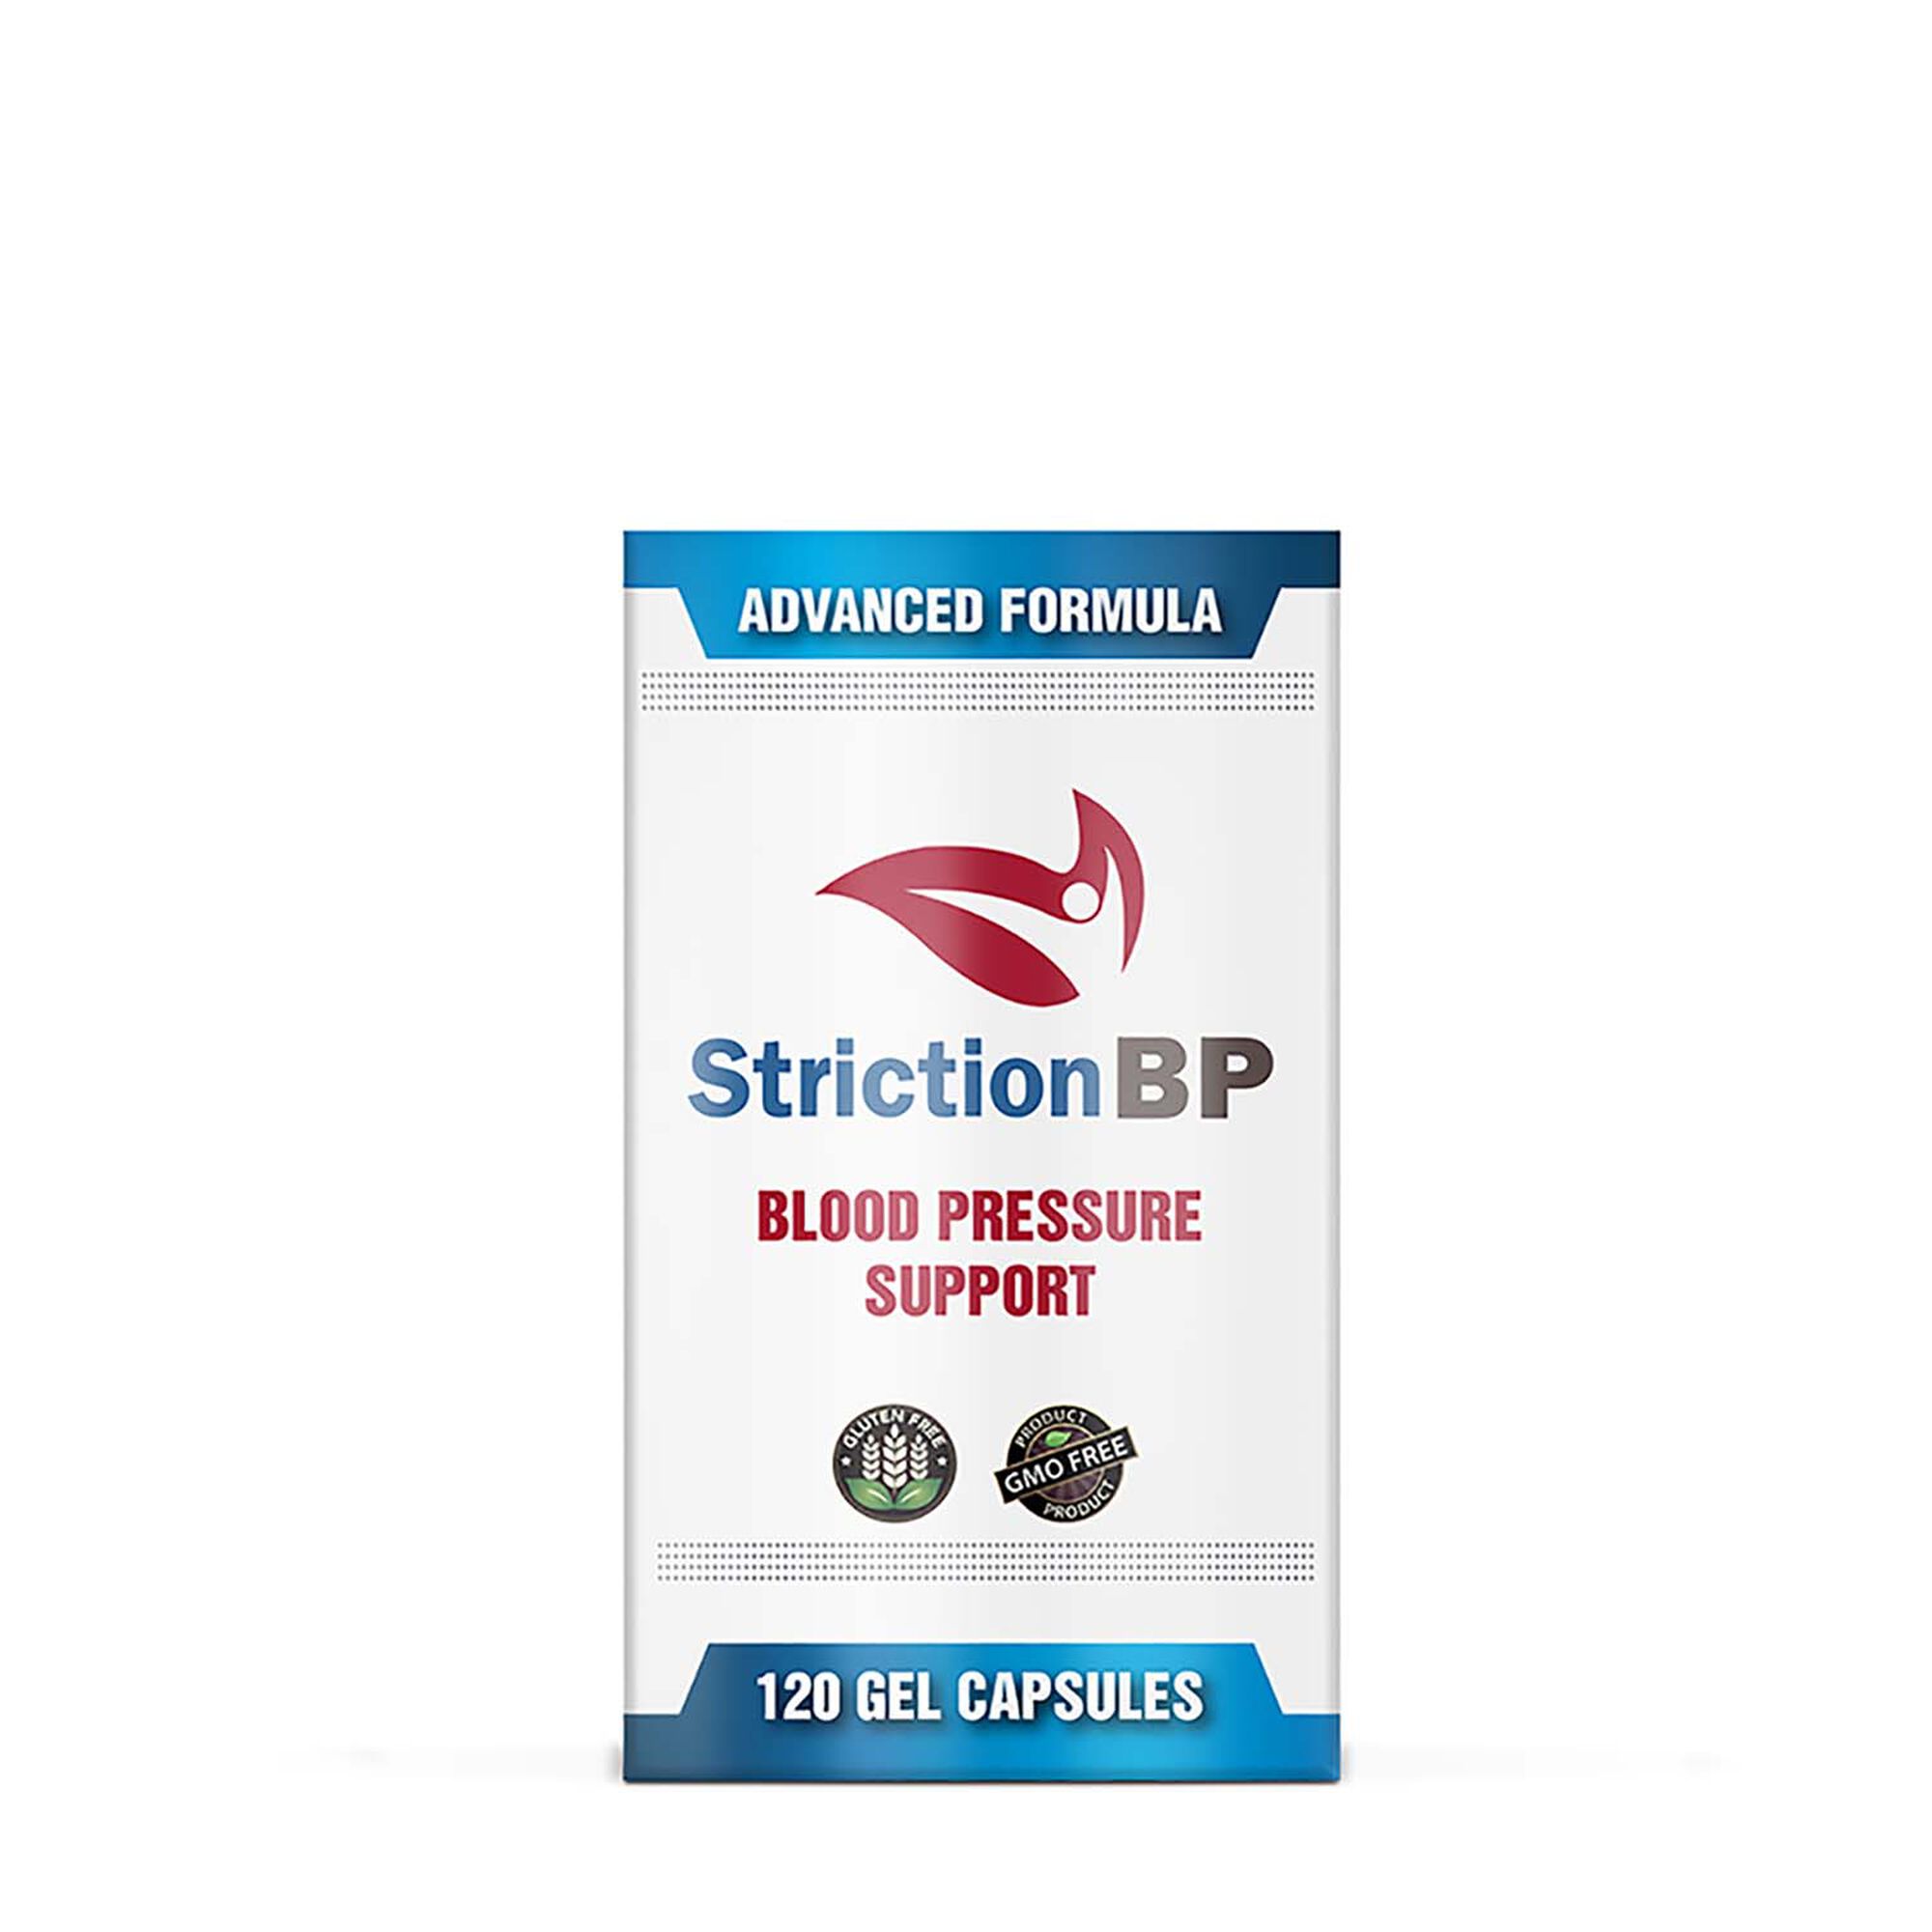 StrictionBP Blood Pressure Support